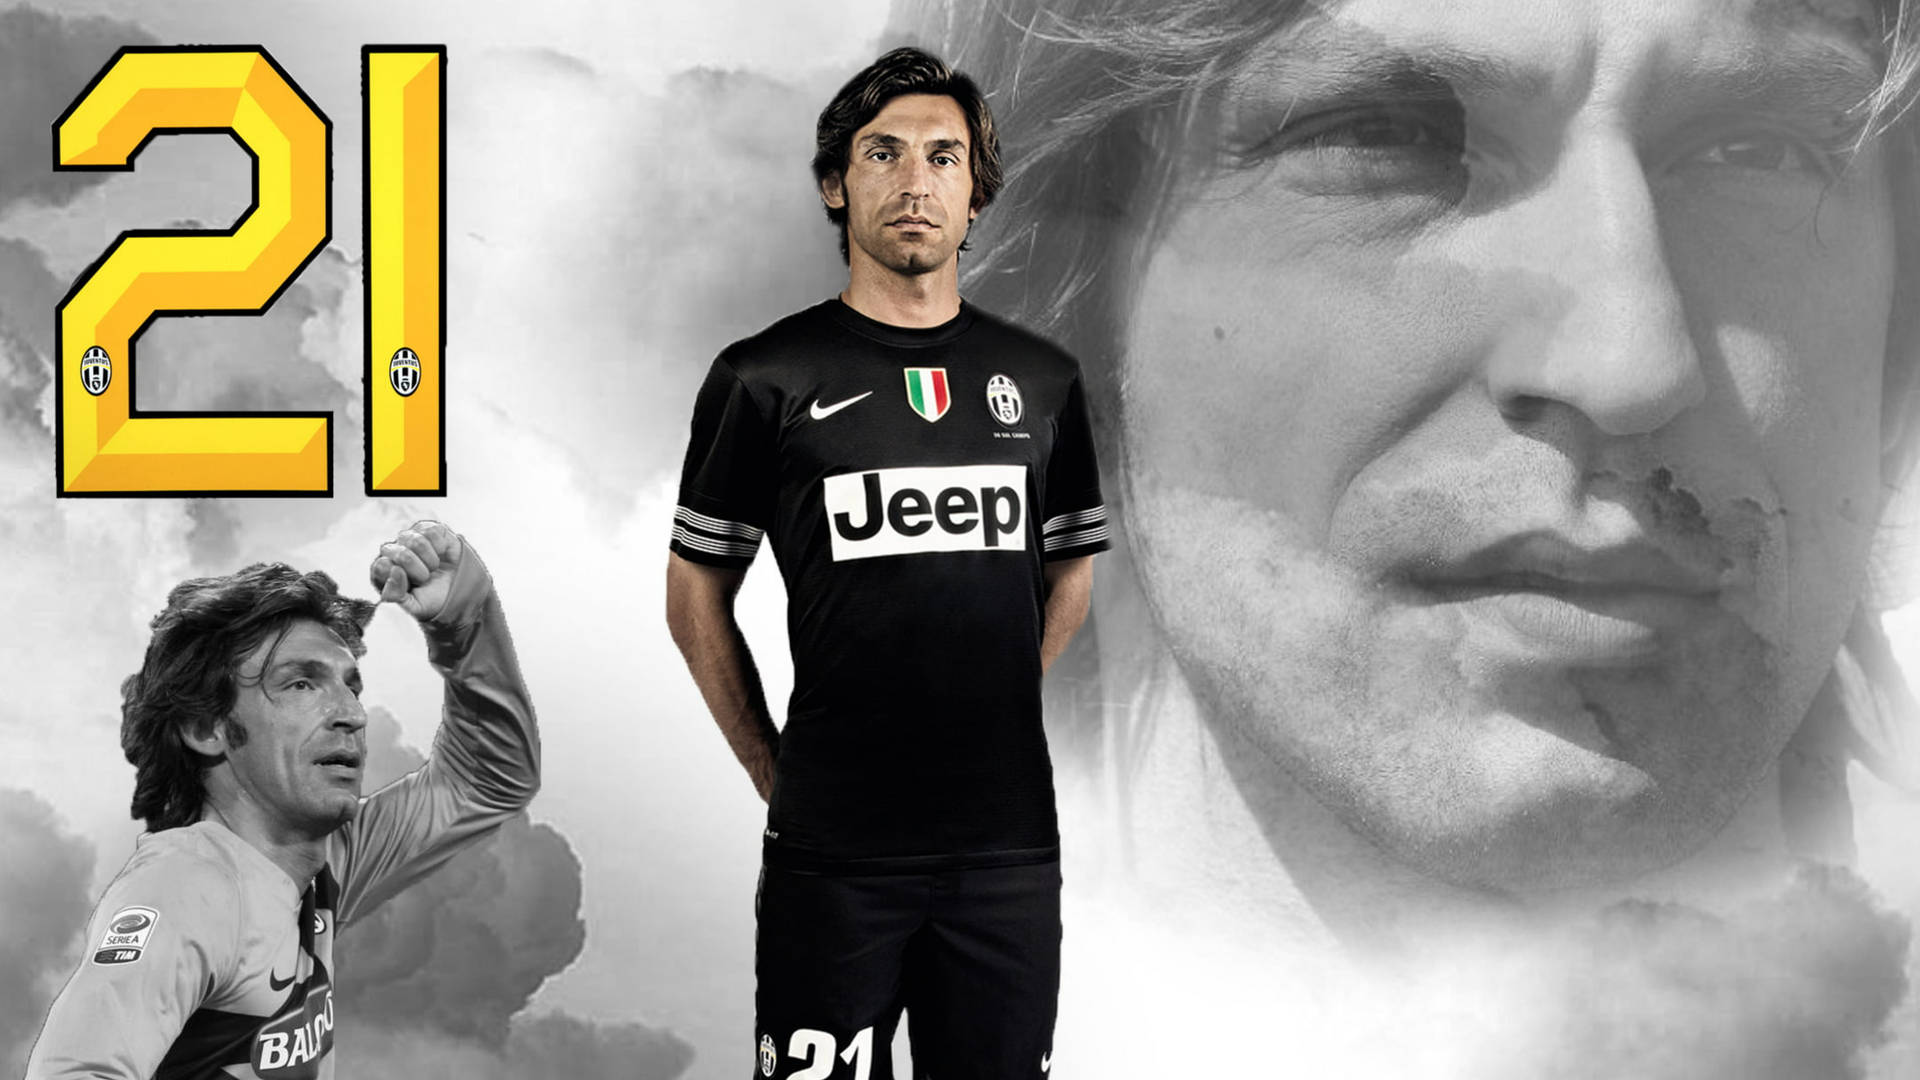 Andrea Pirlo Juventus F.c. Background